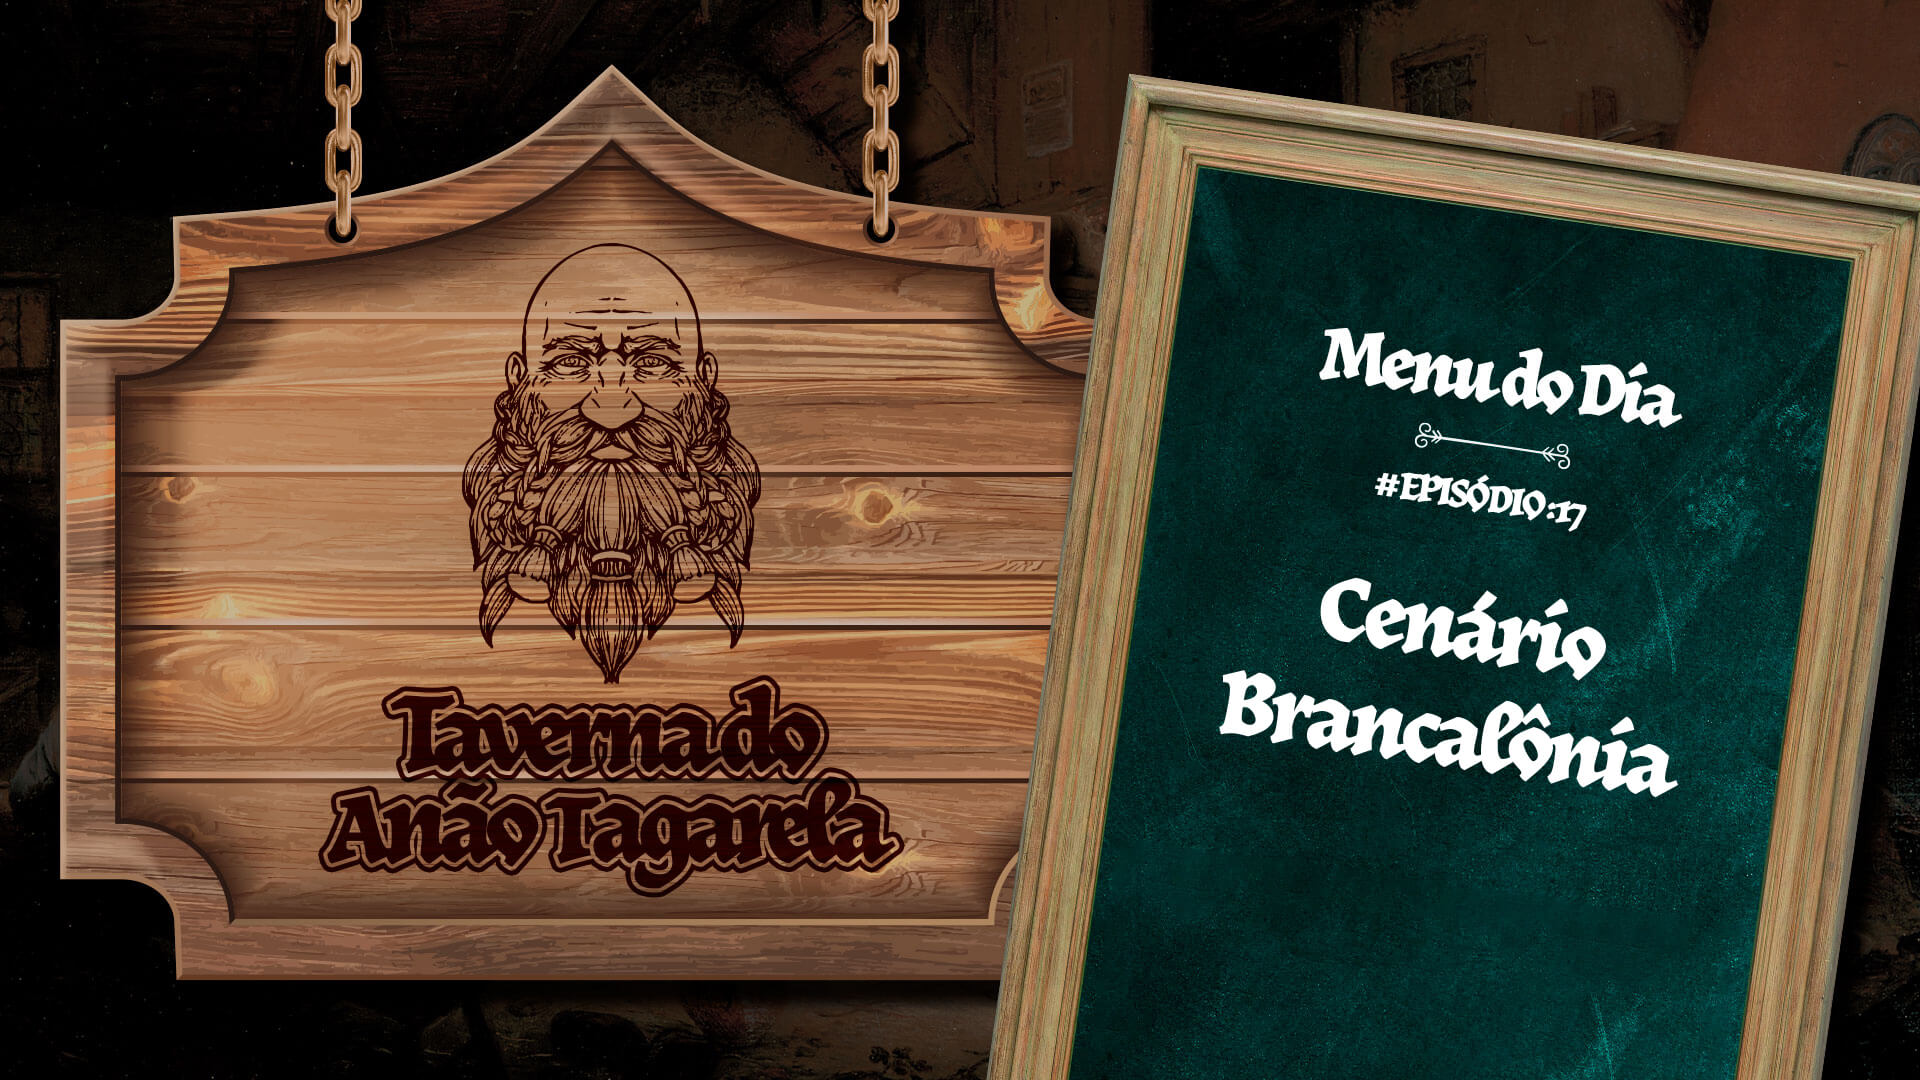 Cenário Brancalônia – Taverna do Anão Tagarela #17